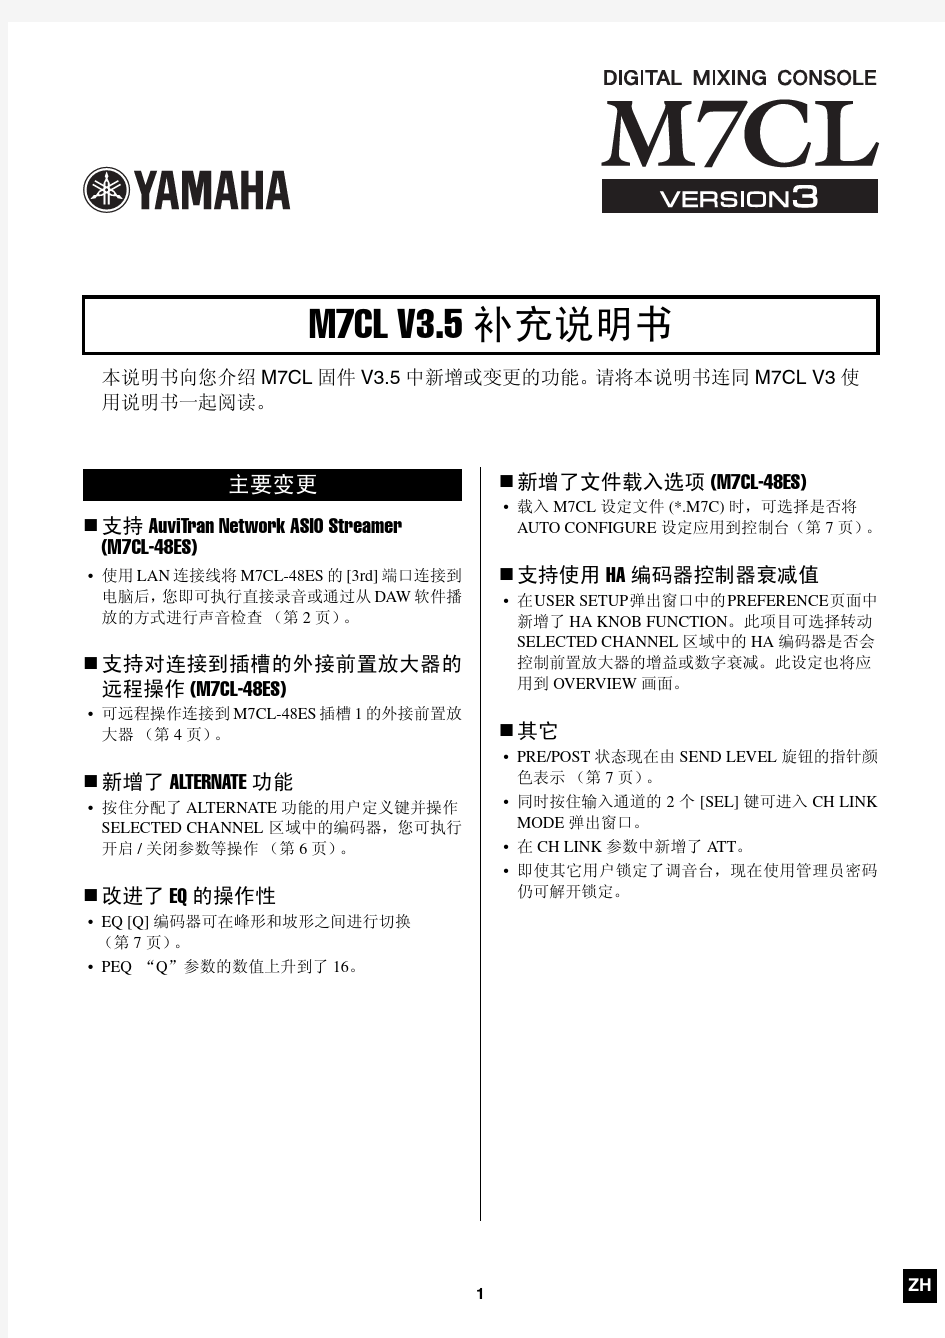 雅马哈M7CL数字调音台V3.5版补充中文说明